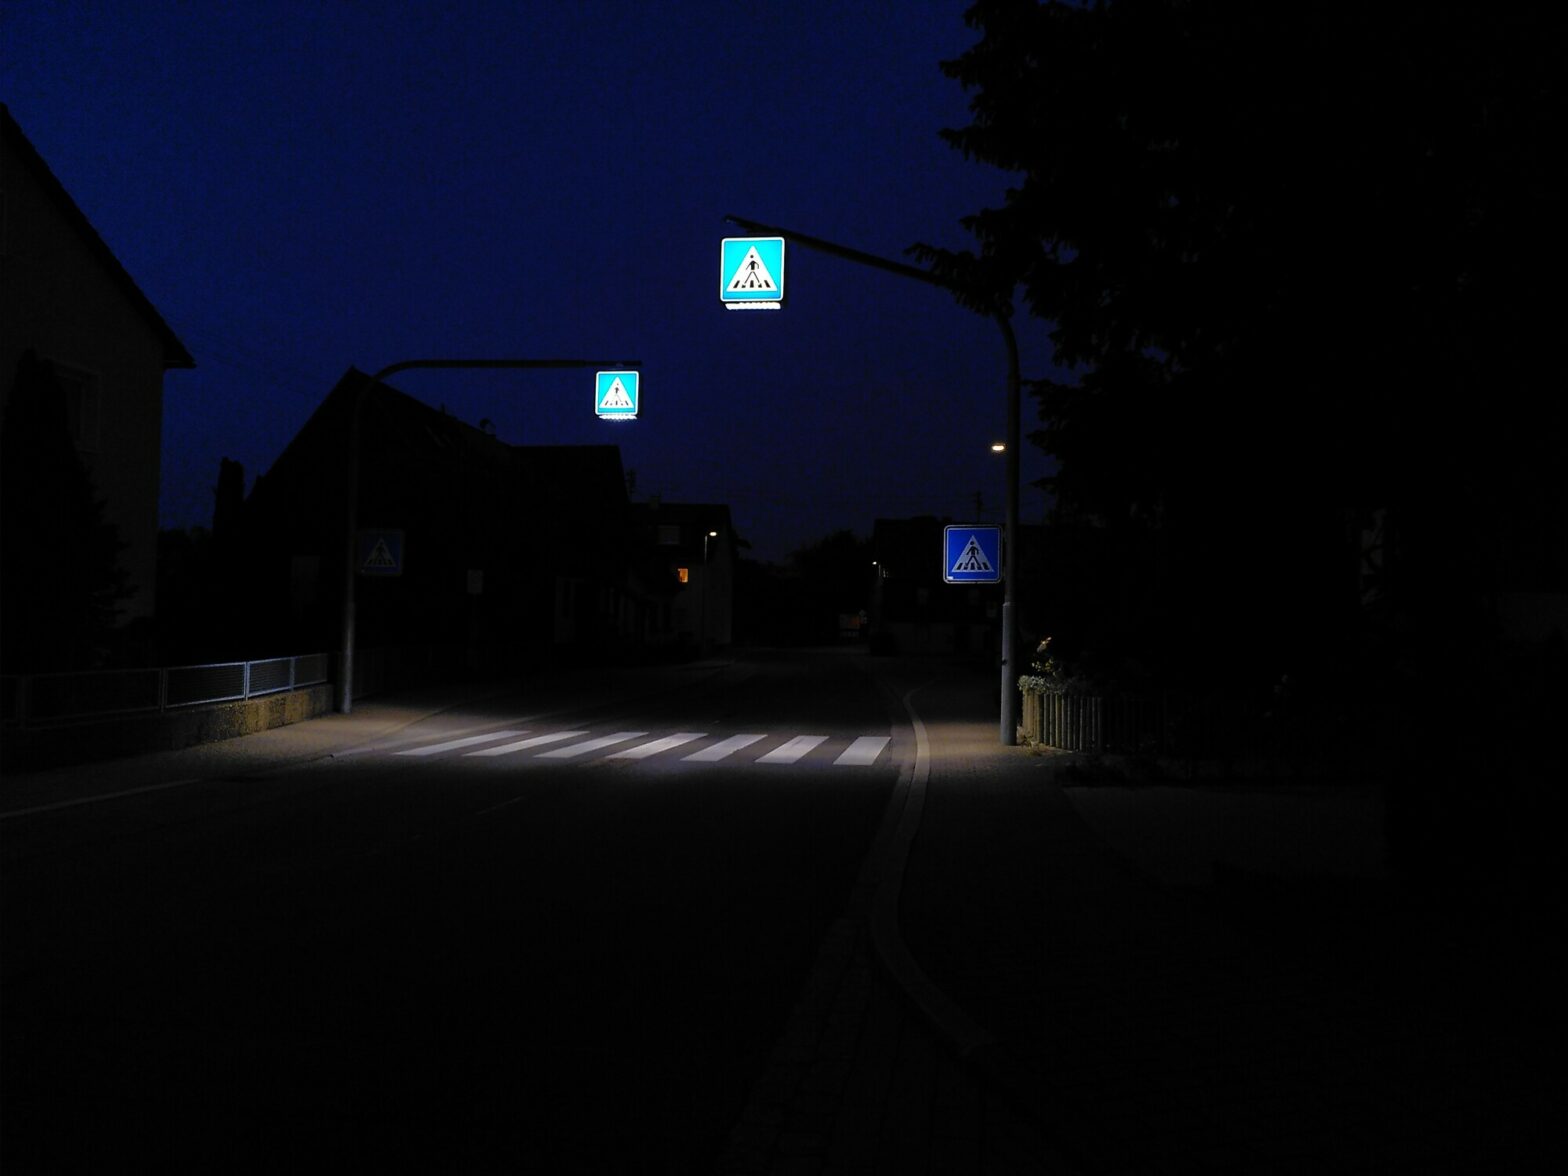 Schön beleuchteter Fußgängerüberweg (Zebrastreifen)